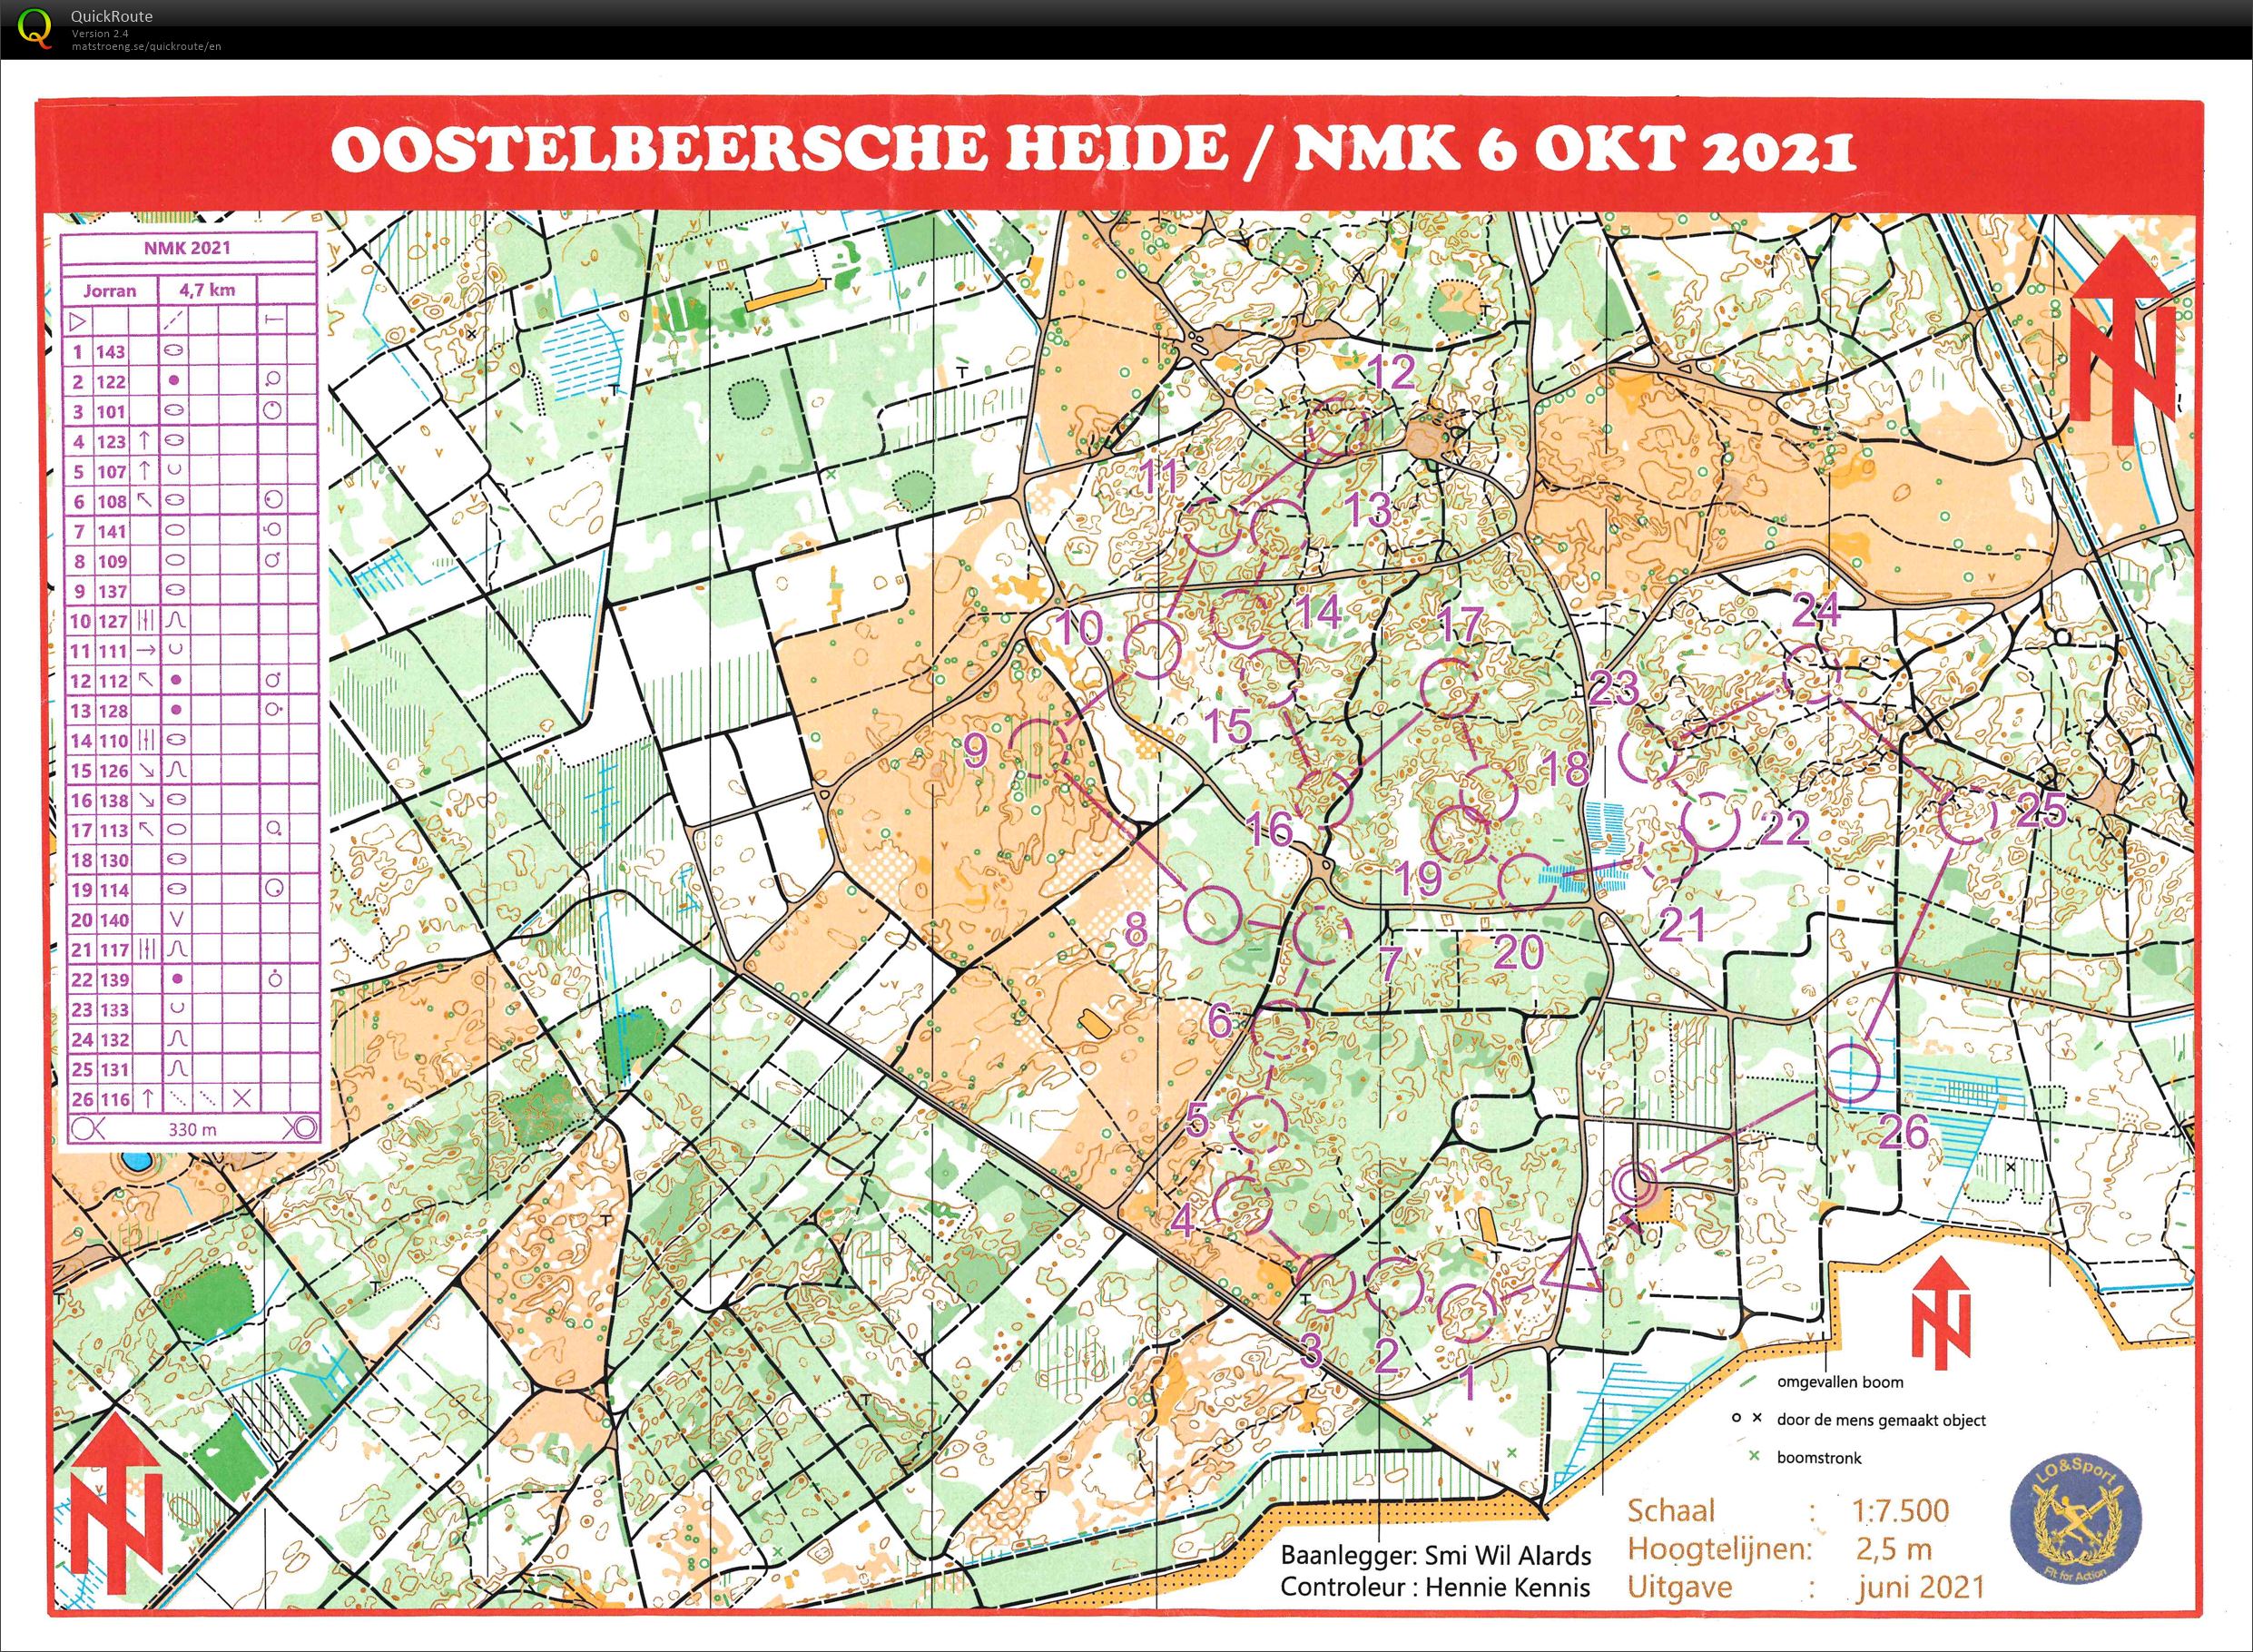 NMK Oostelbeersche Heide (06.10.2021)